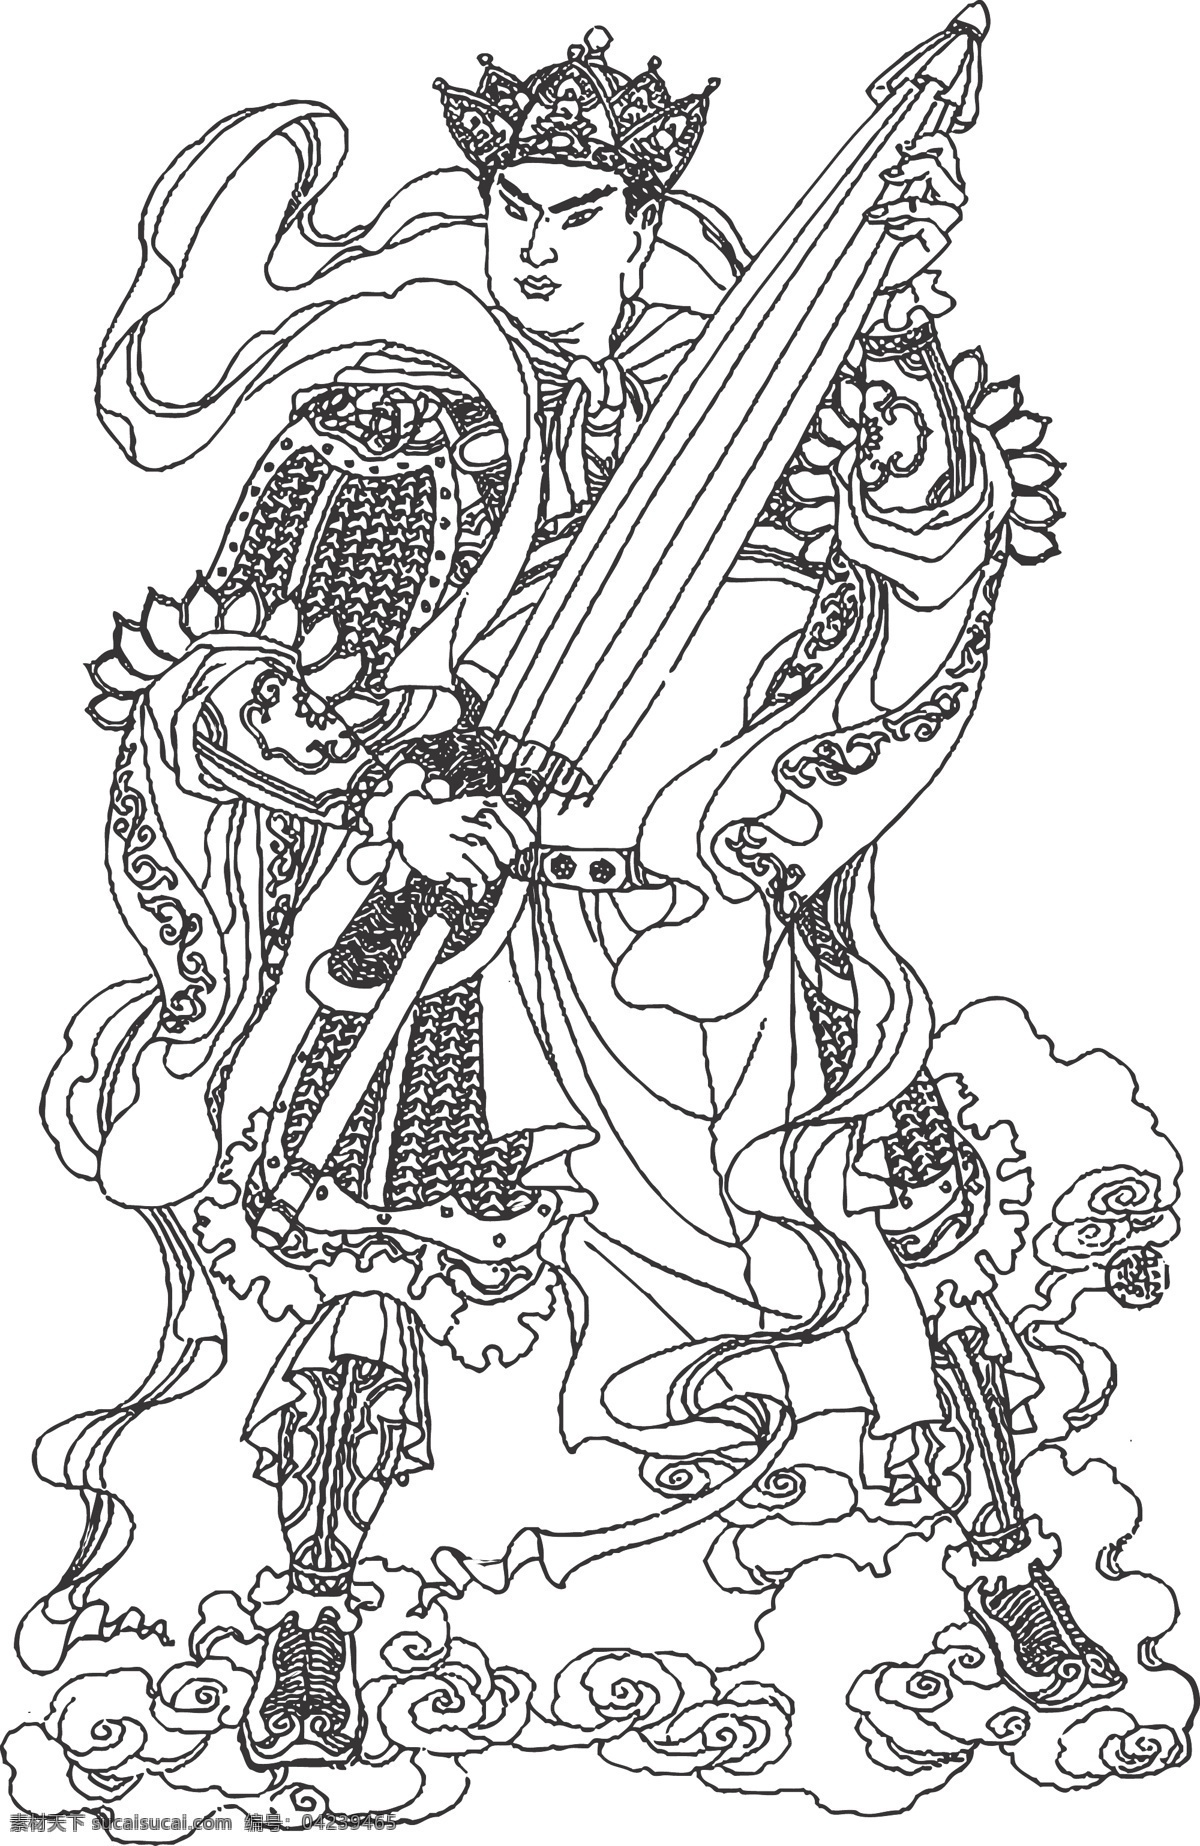 多闻天王 佛教护法 四天尊王之一 印度婆罗门教 天神 人物 线条 矢量 装饰 插画 白描 文化艺术 宗教信仰